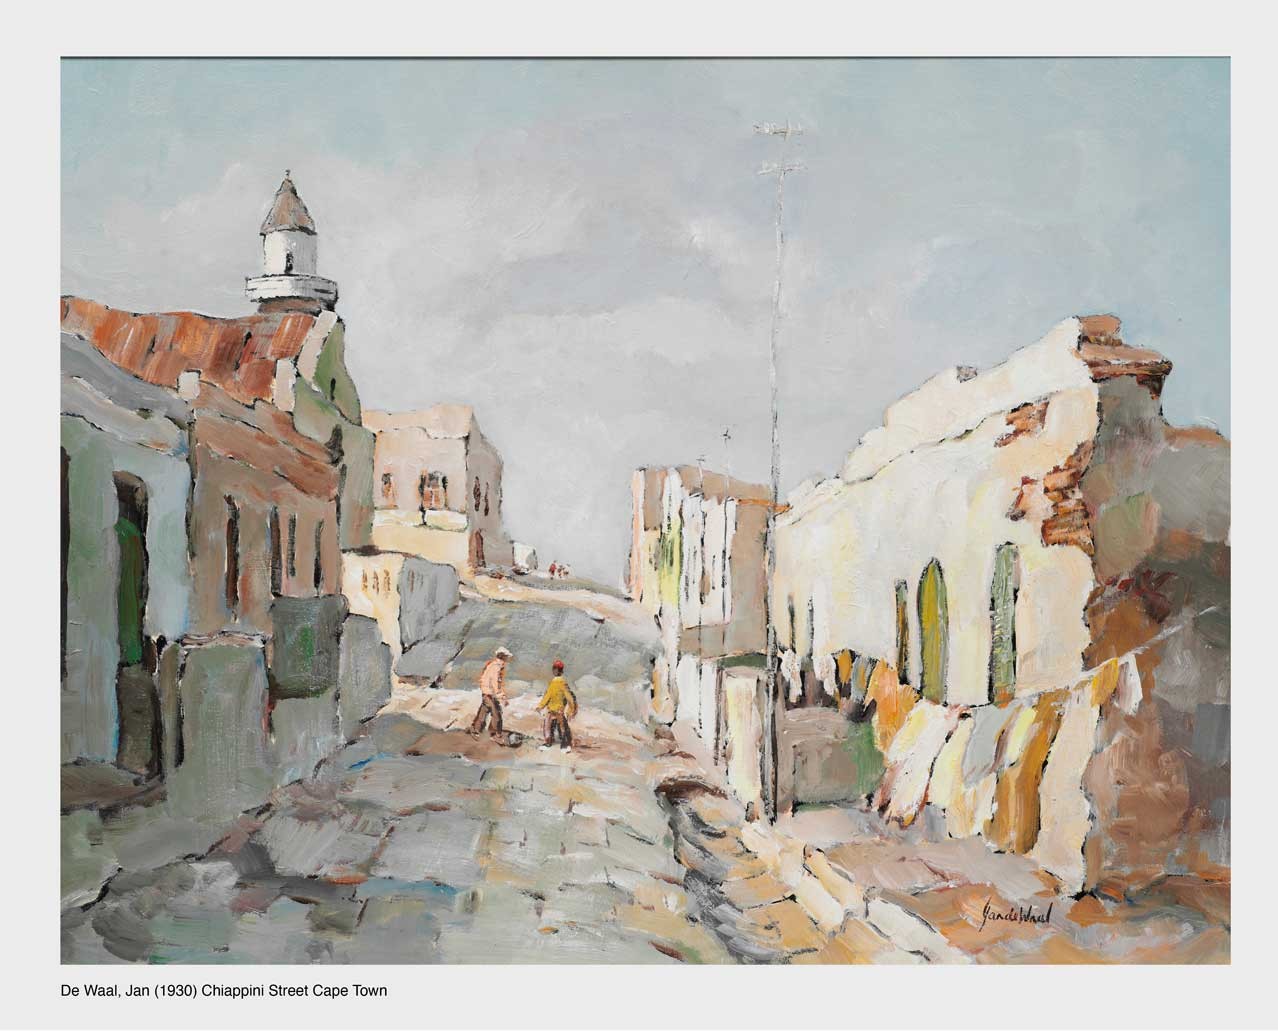 De Waal, Jan (1930) Chiappini Street Cape Town